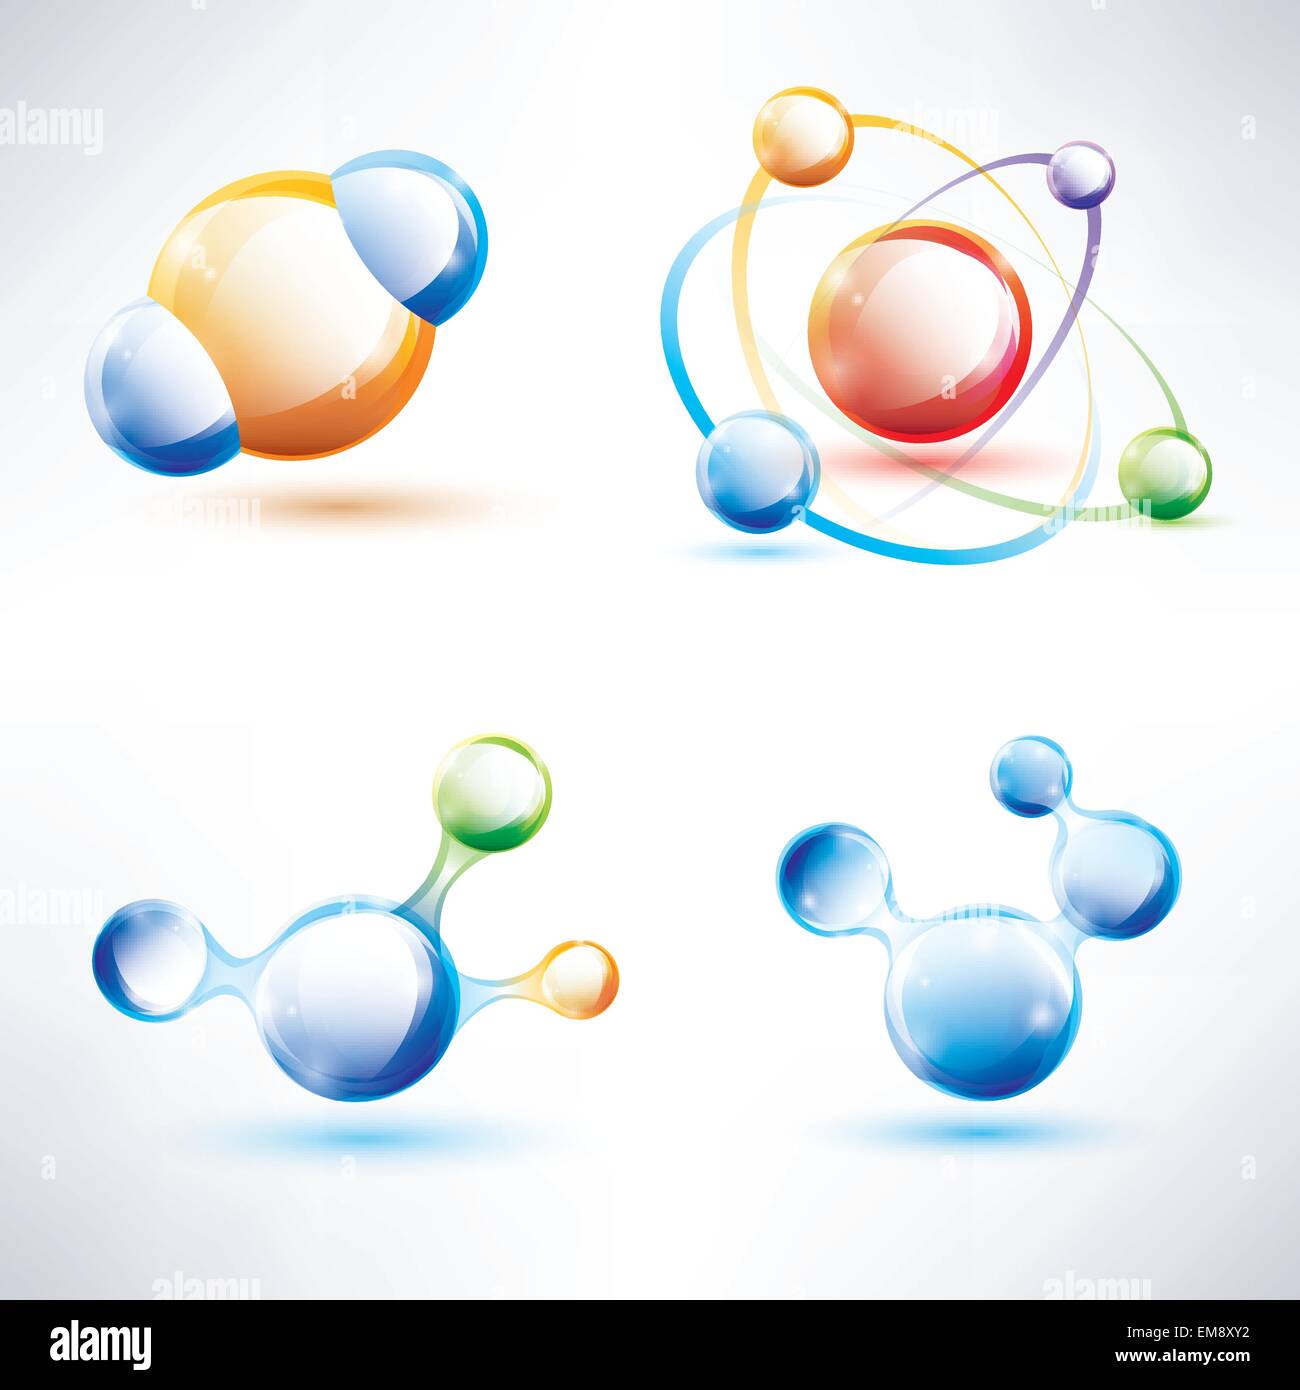 Molekülstruktur, abstrakte glänzend Icons Set, Wissenschaft und Energie Konzept Stock Vektor